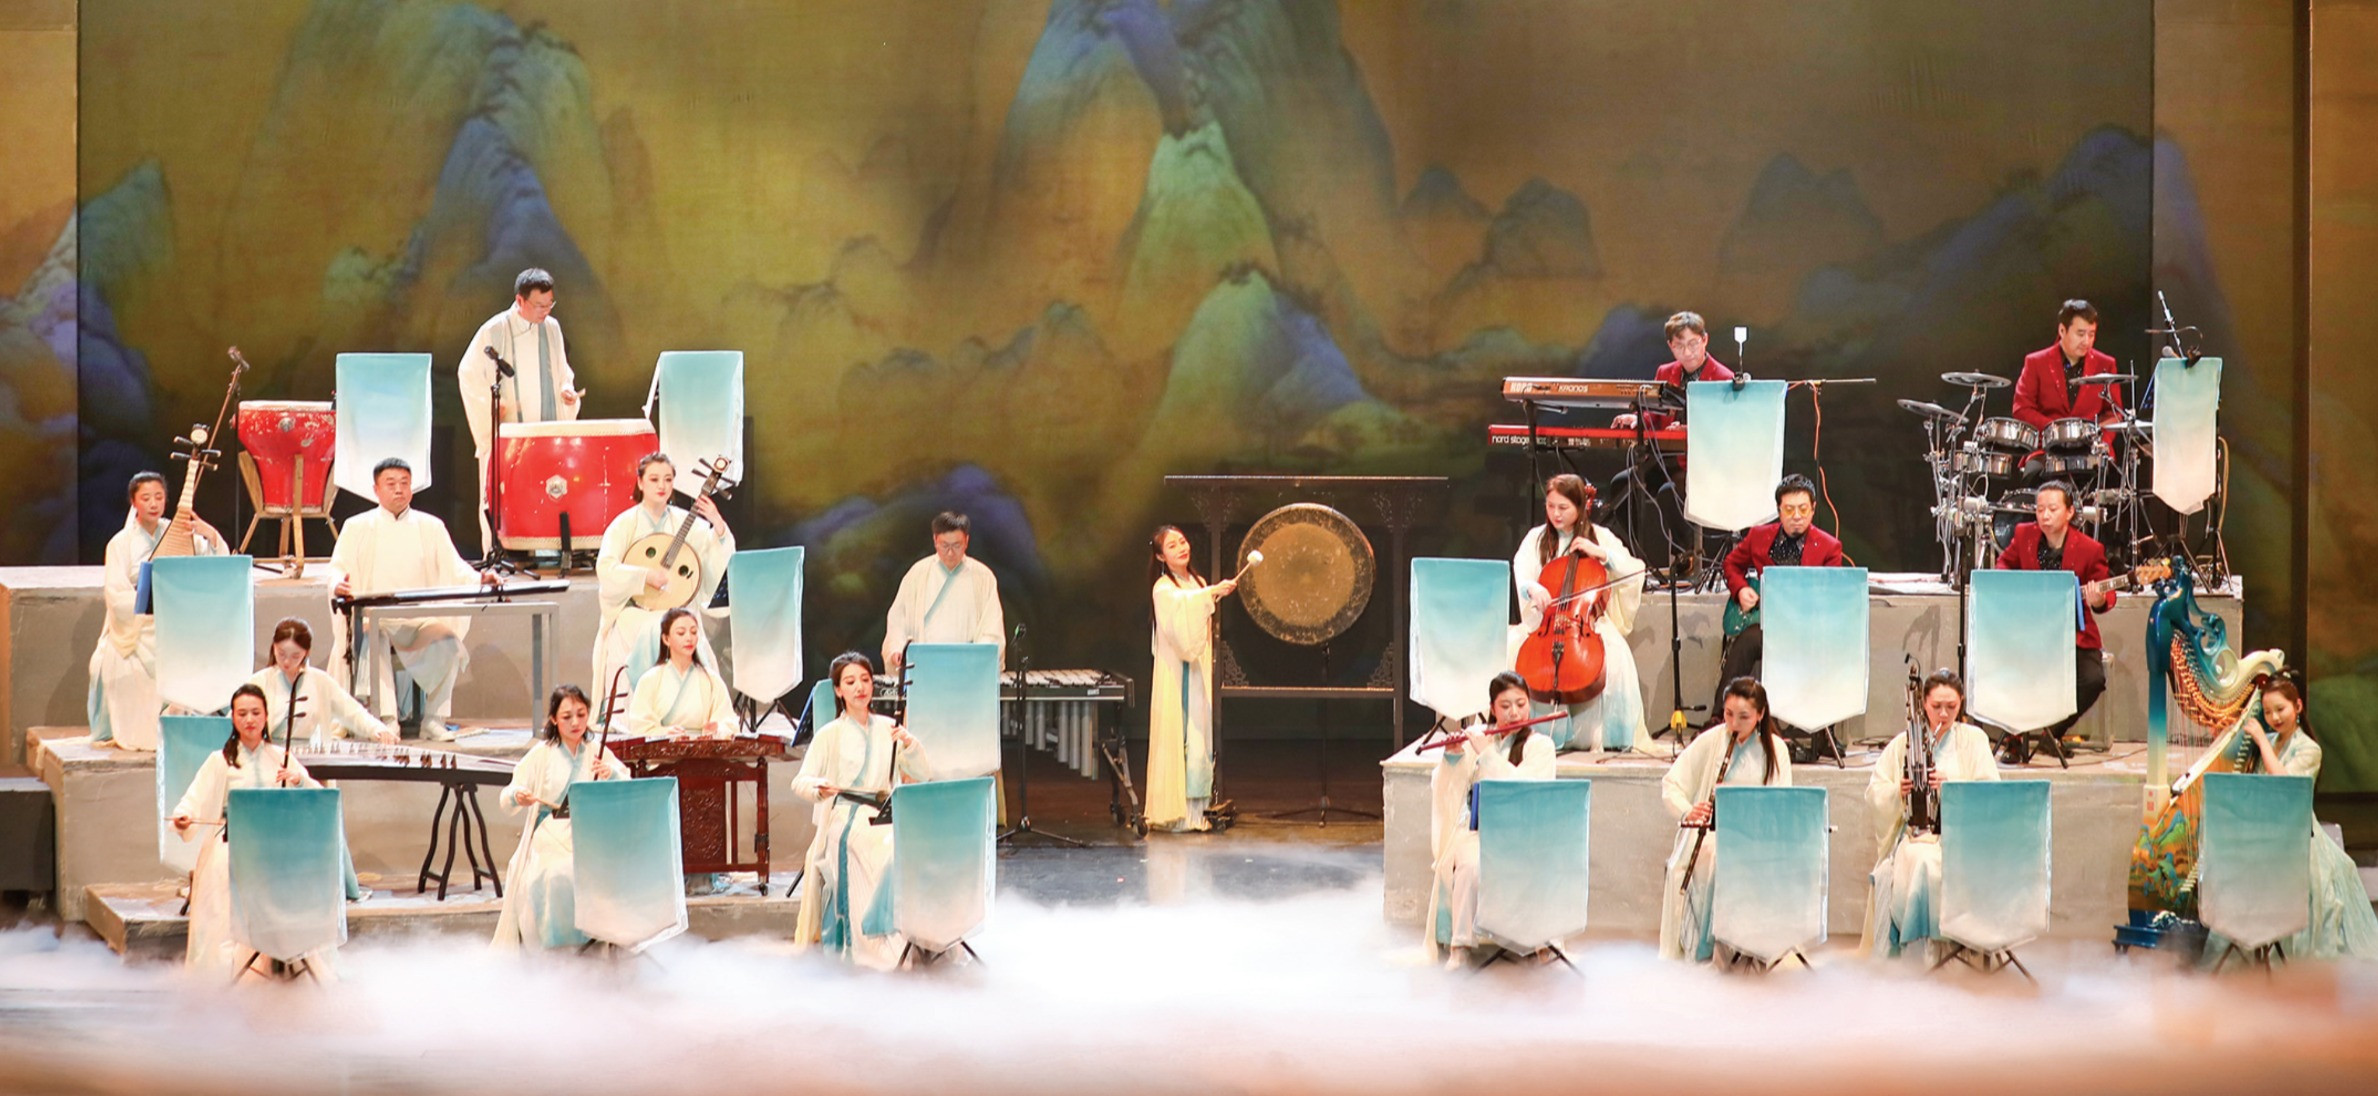 傳播中華文化表達 四川「德陽之春」公益演出活動啟幕